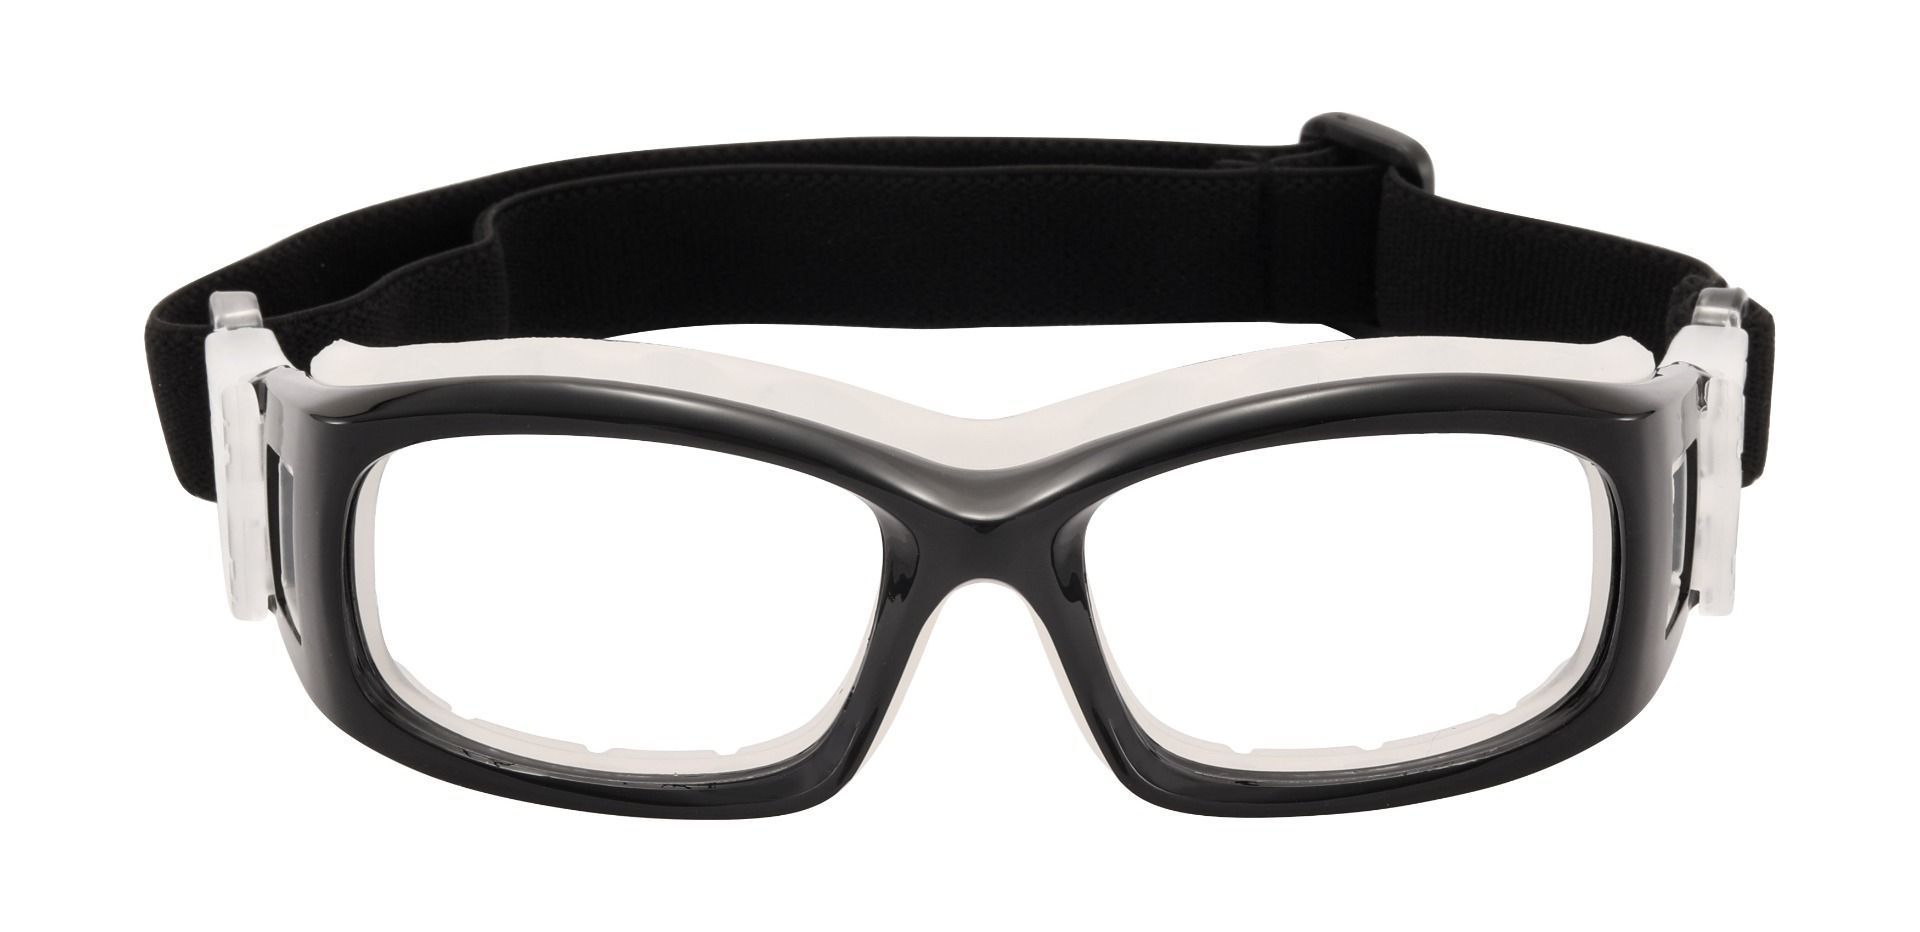 Rodriguez Sports Goggles Prescription Glasses - Black, Kids' Eyeglasses